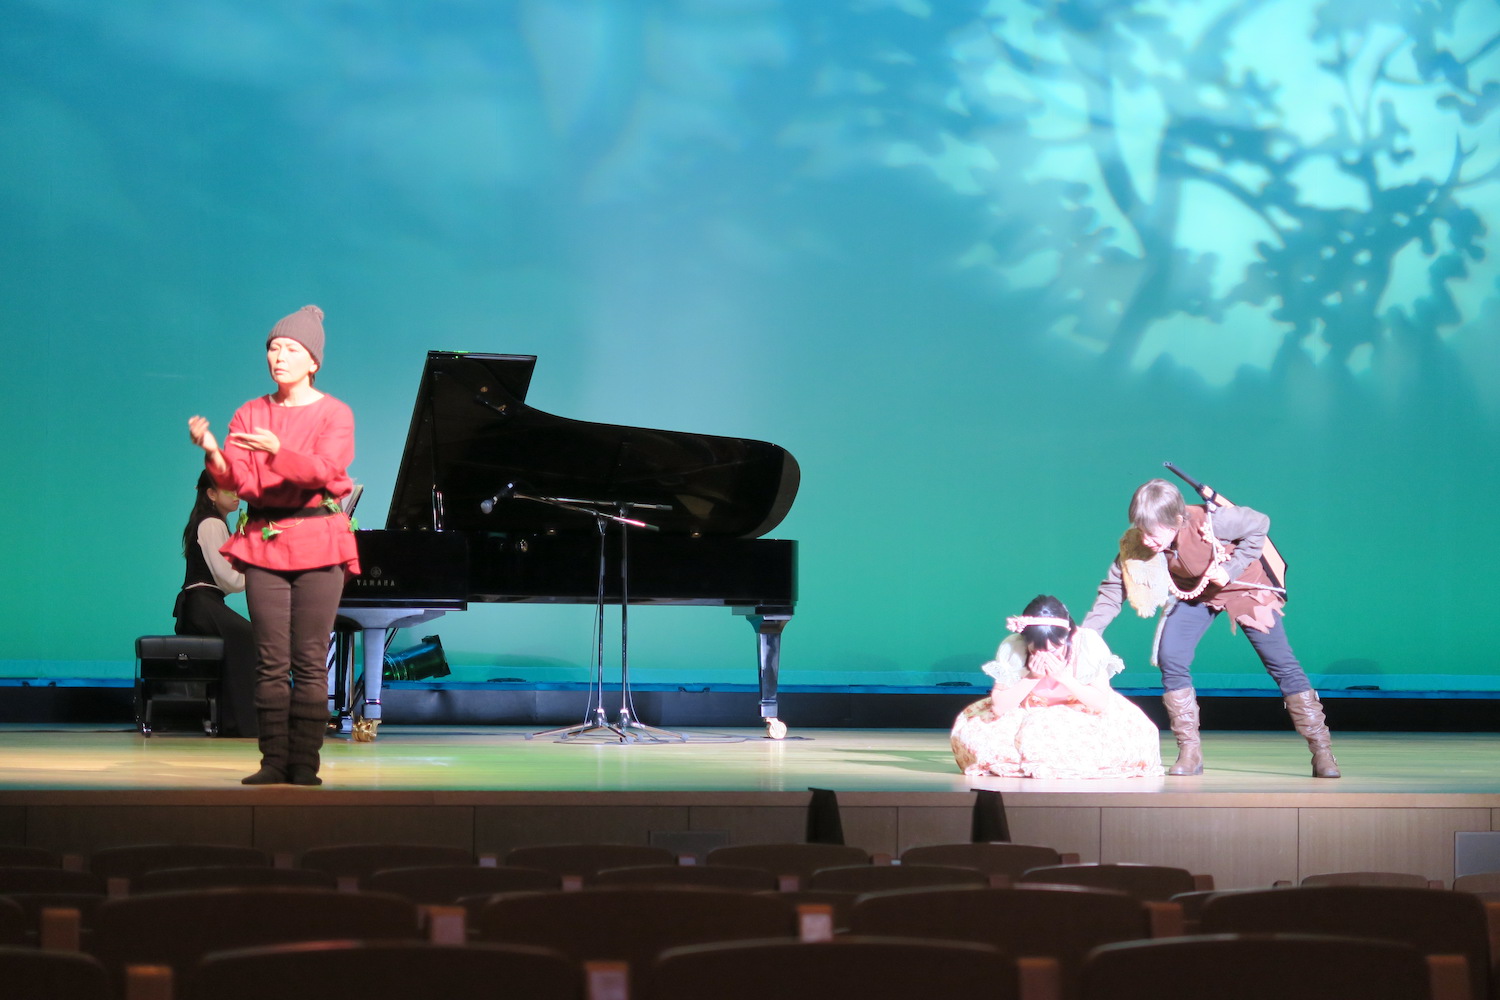 演劇『白雪姫』にて、白雪姫役と猟師役の俳優が演劇を行っている写真です。舞台の左端、ピアノの前の方で、赤い服を着た人が手話通訳を行っています